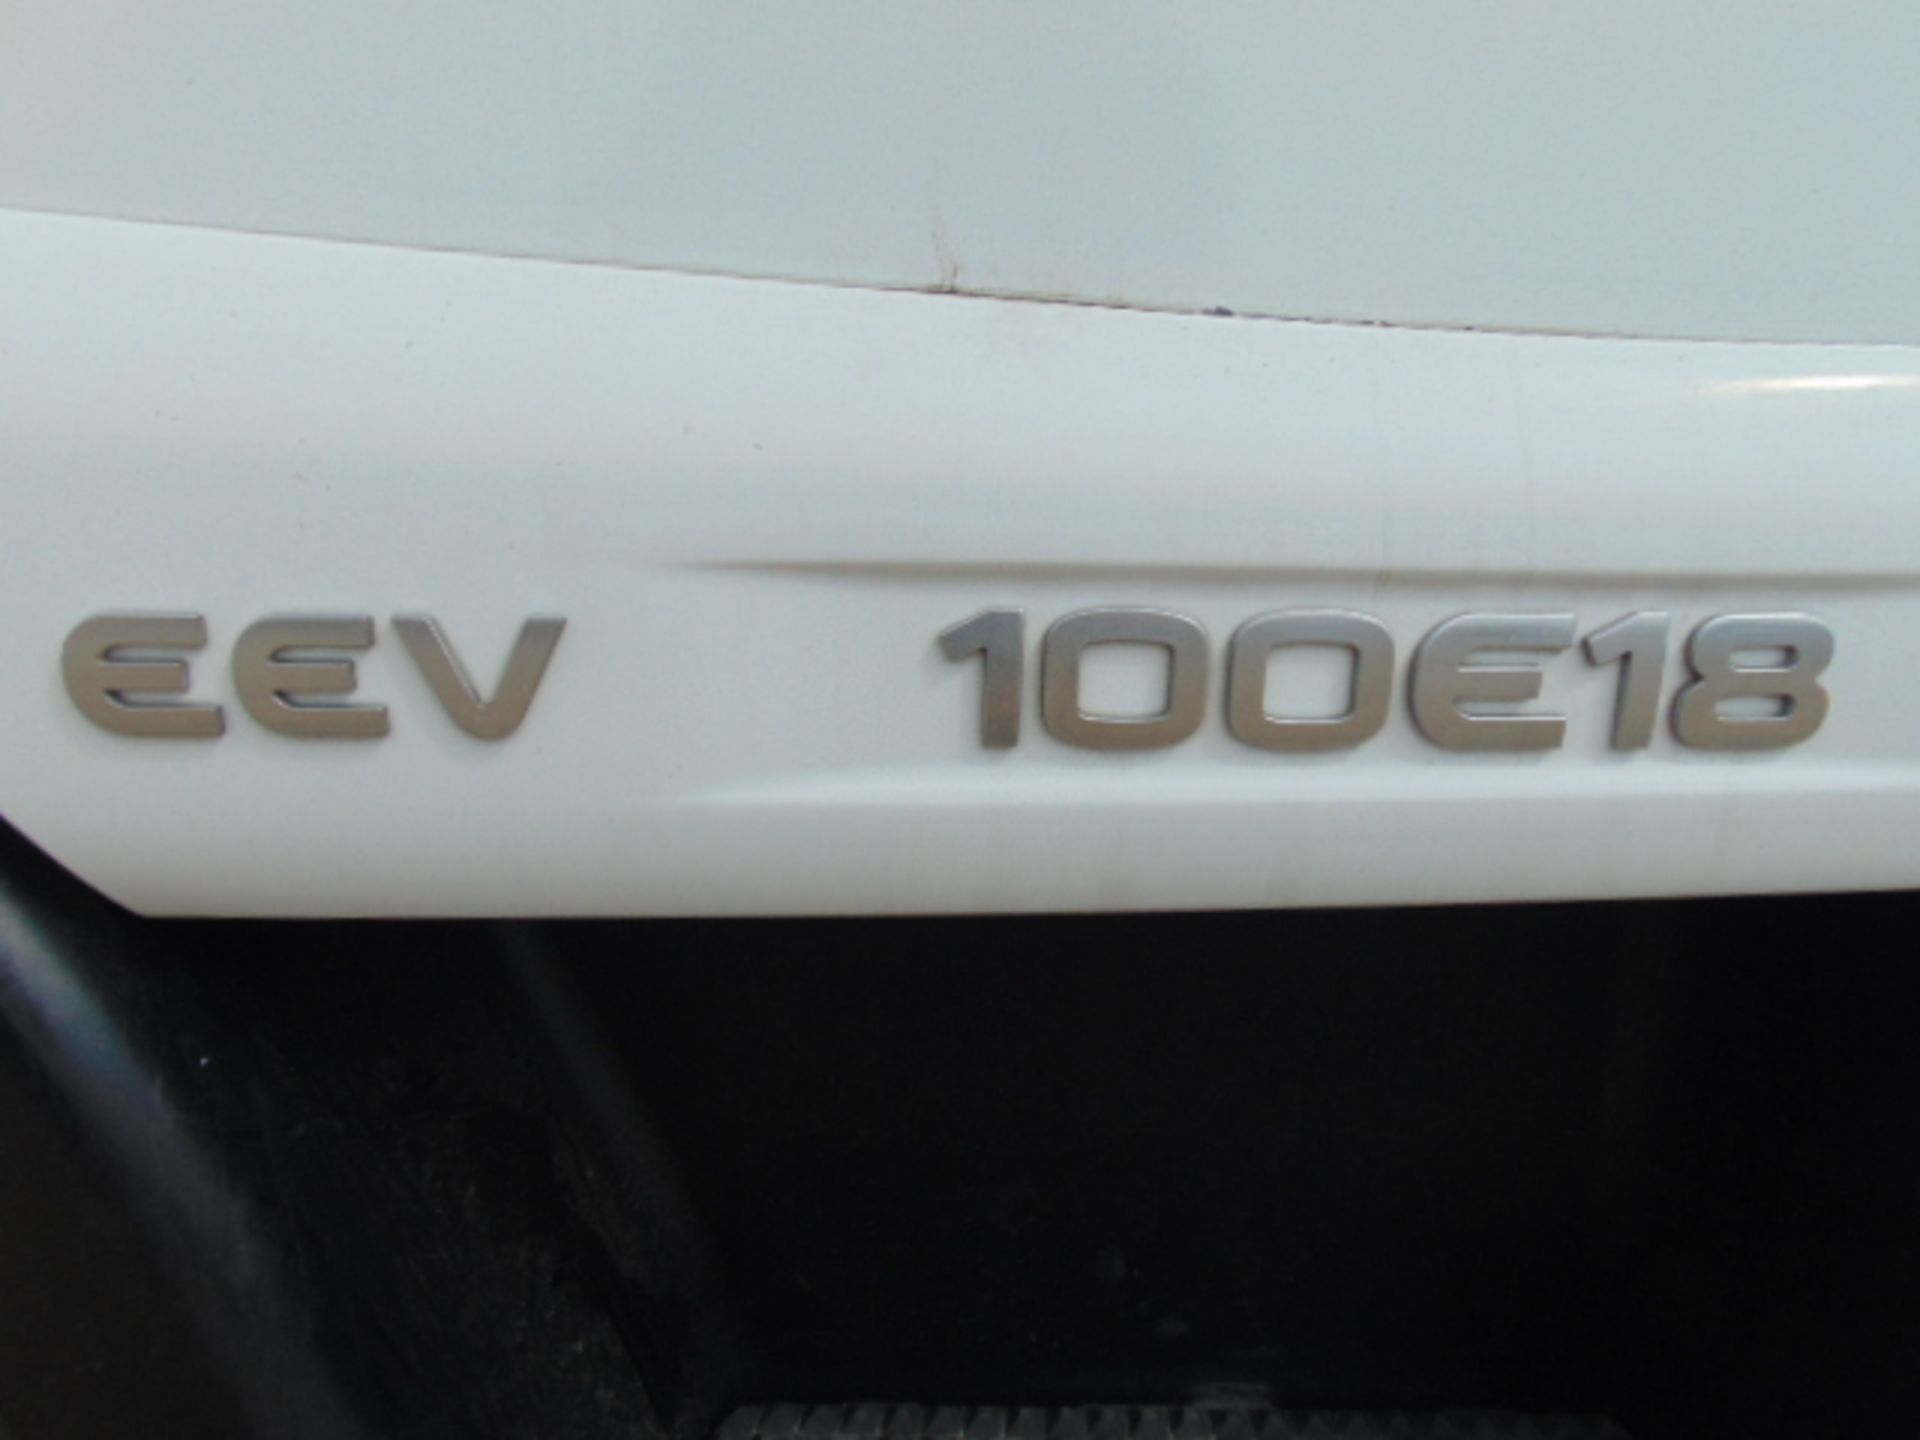 2011 Iveco Eurocargo 100E18 Day Cab Box Van 4x2 3.9L Diesel - Prison/Secure Transport Vehicle - Bild 25 aus 25